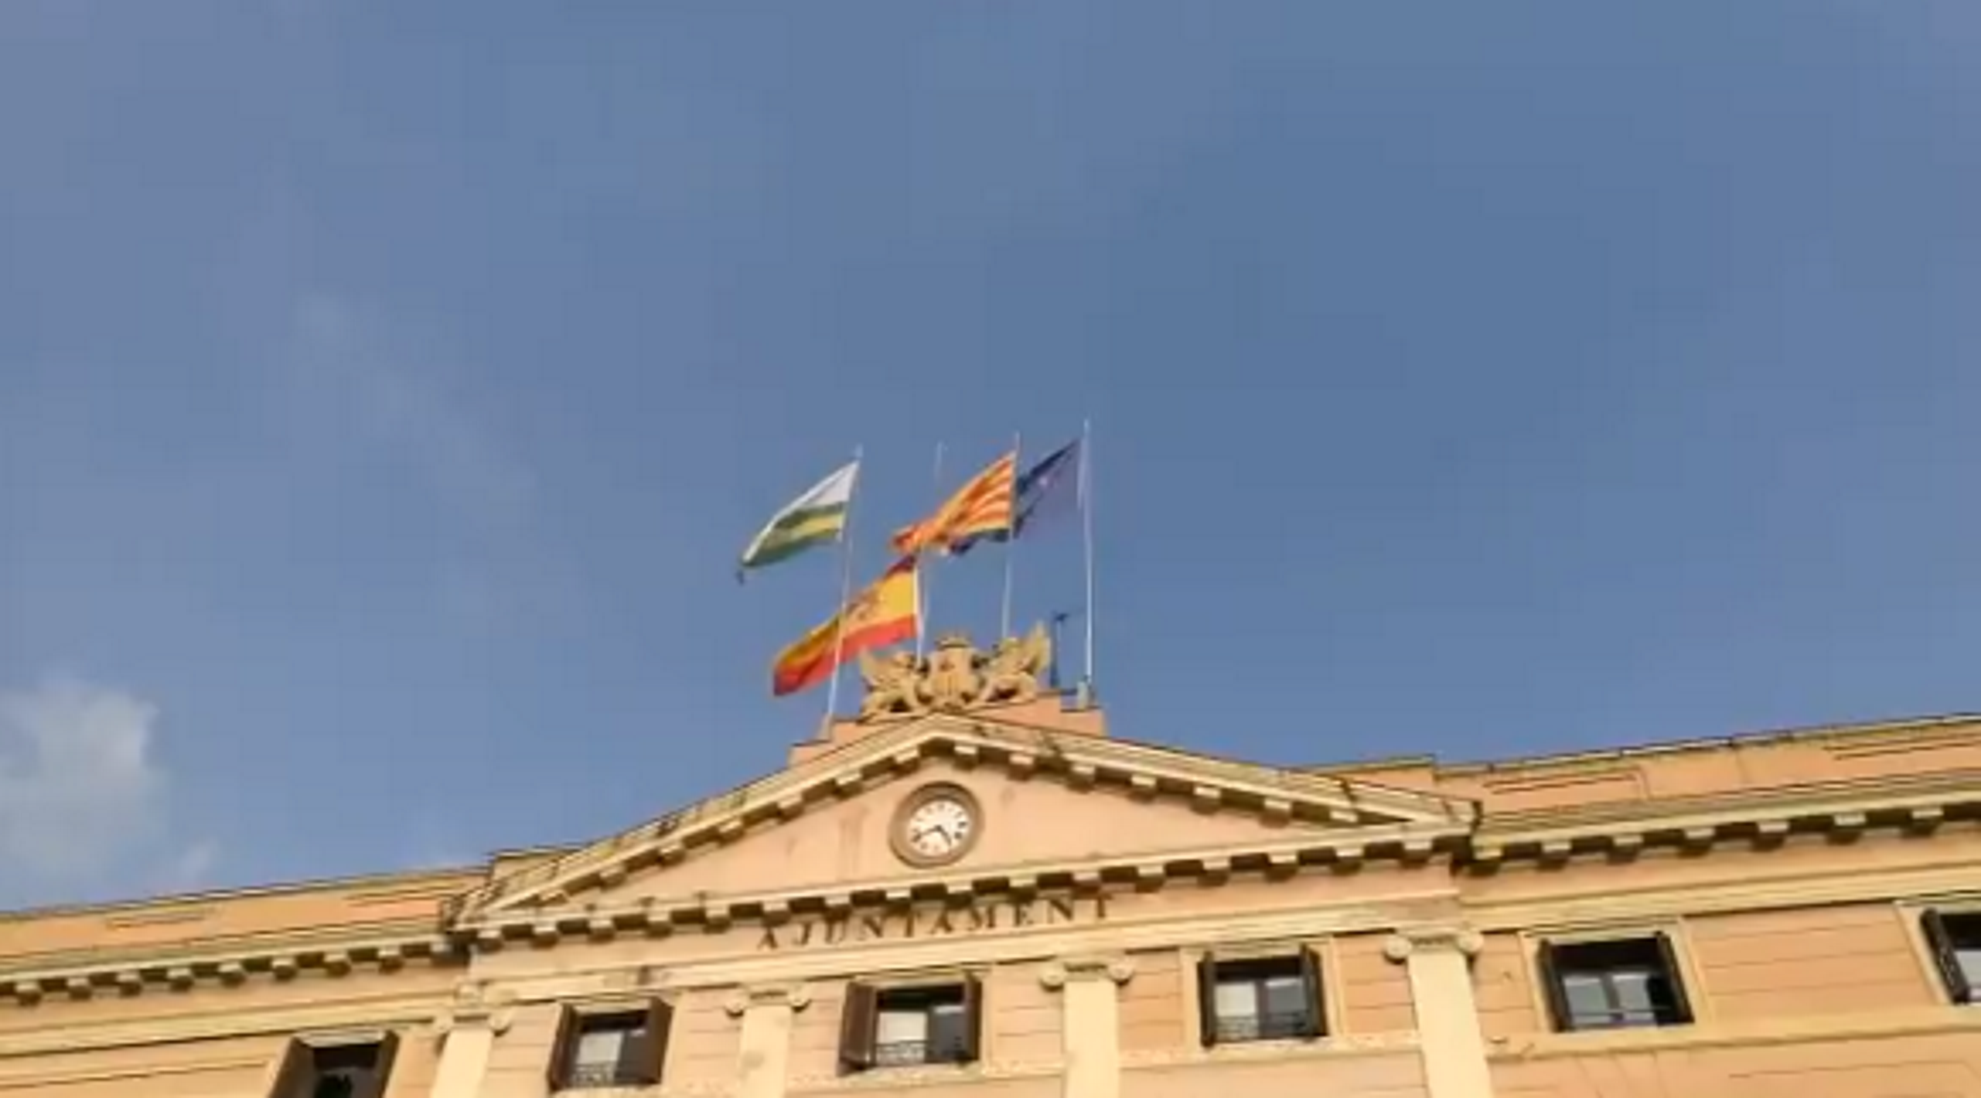 Sabadell arria la bandera espanyola